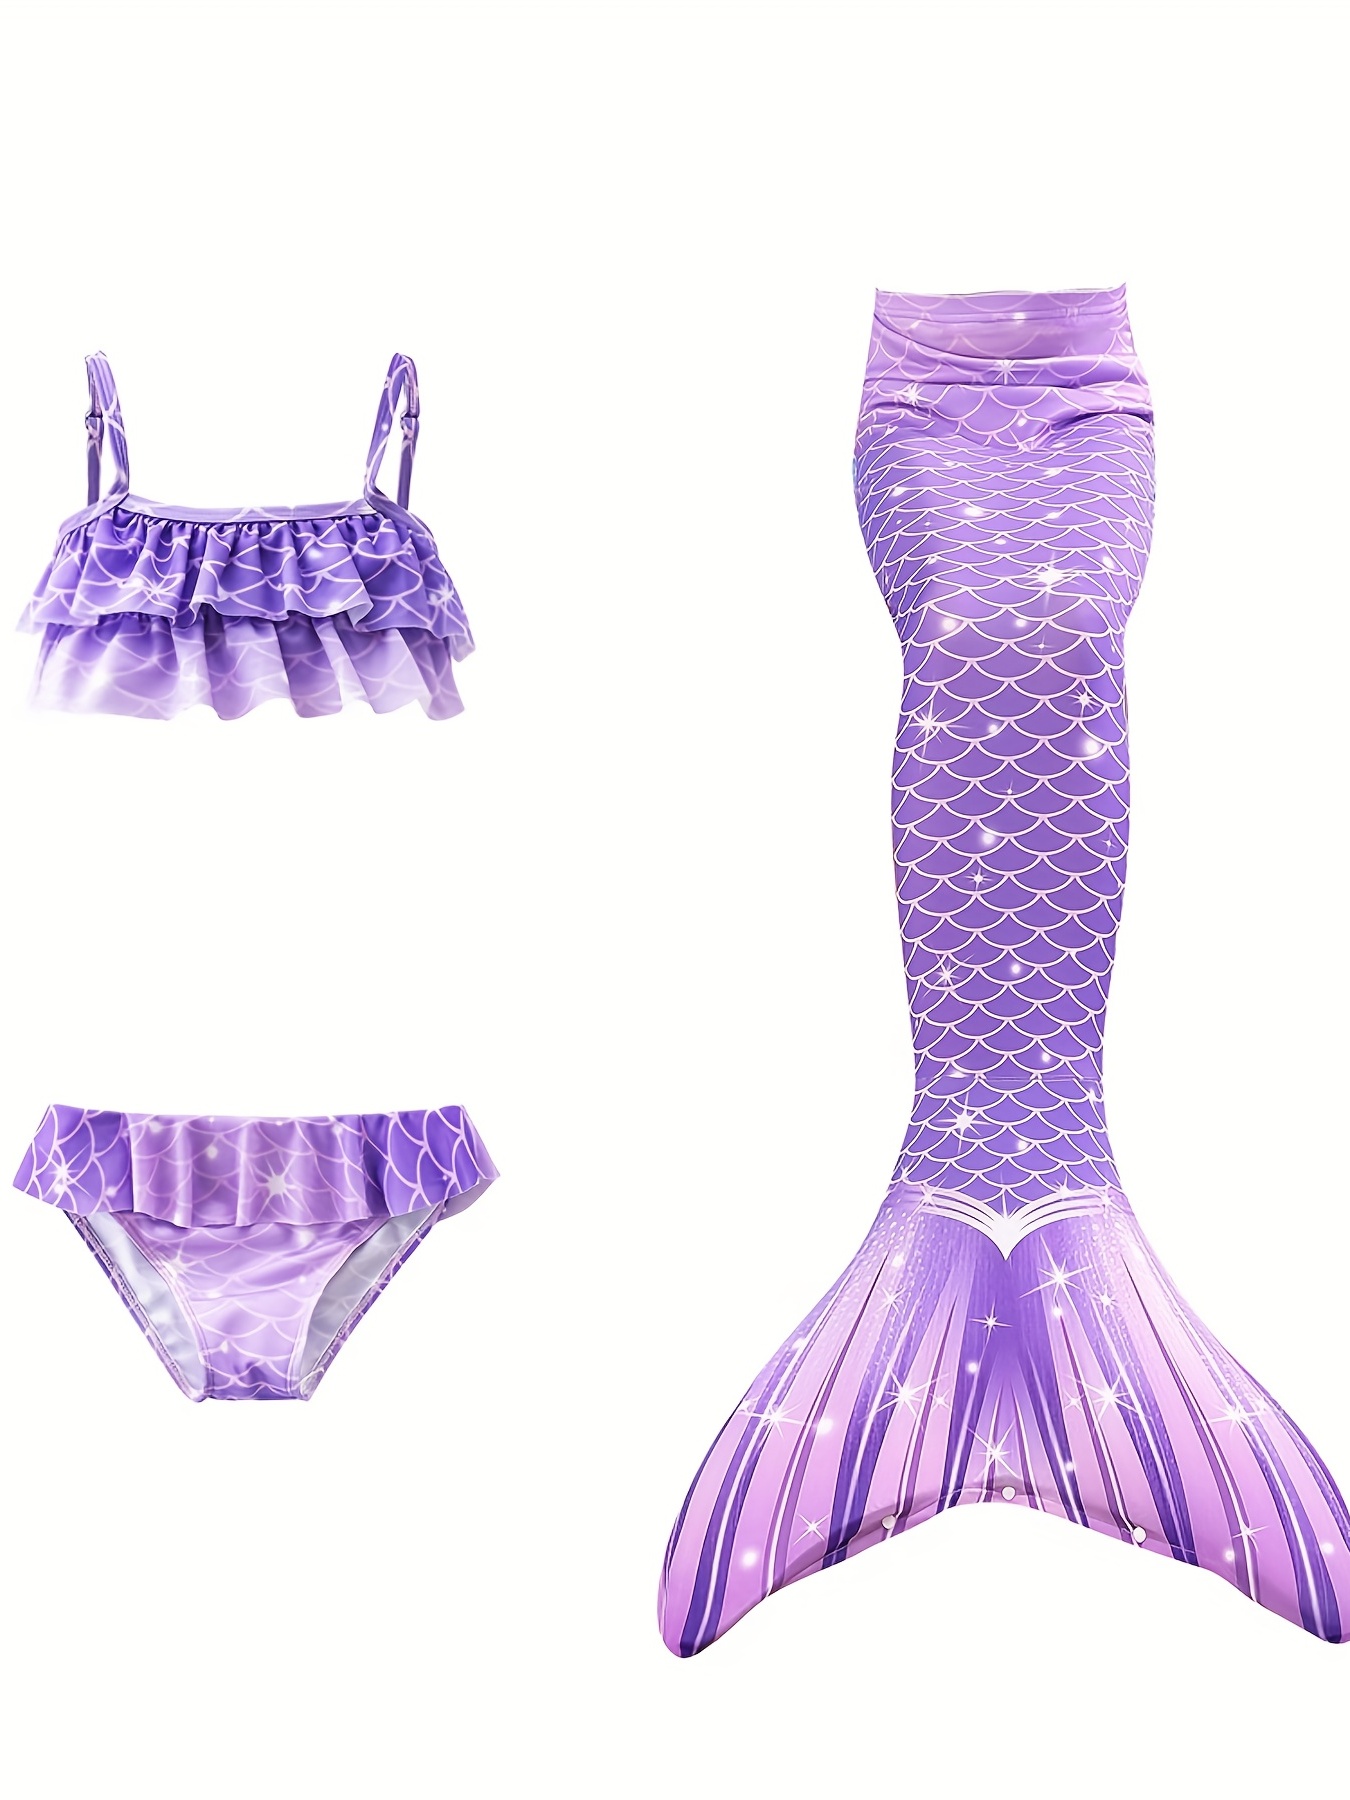 Mermaid Shiny bikini top